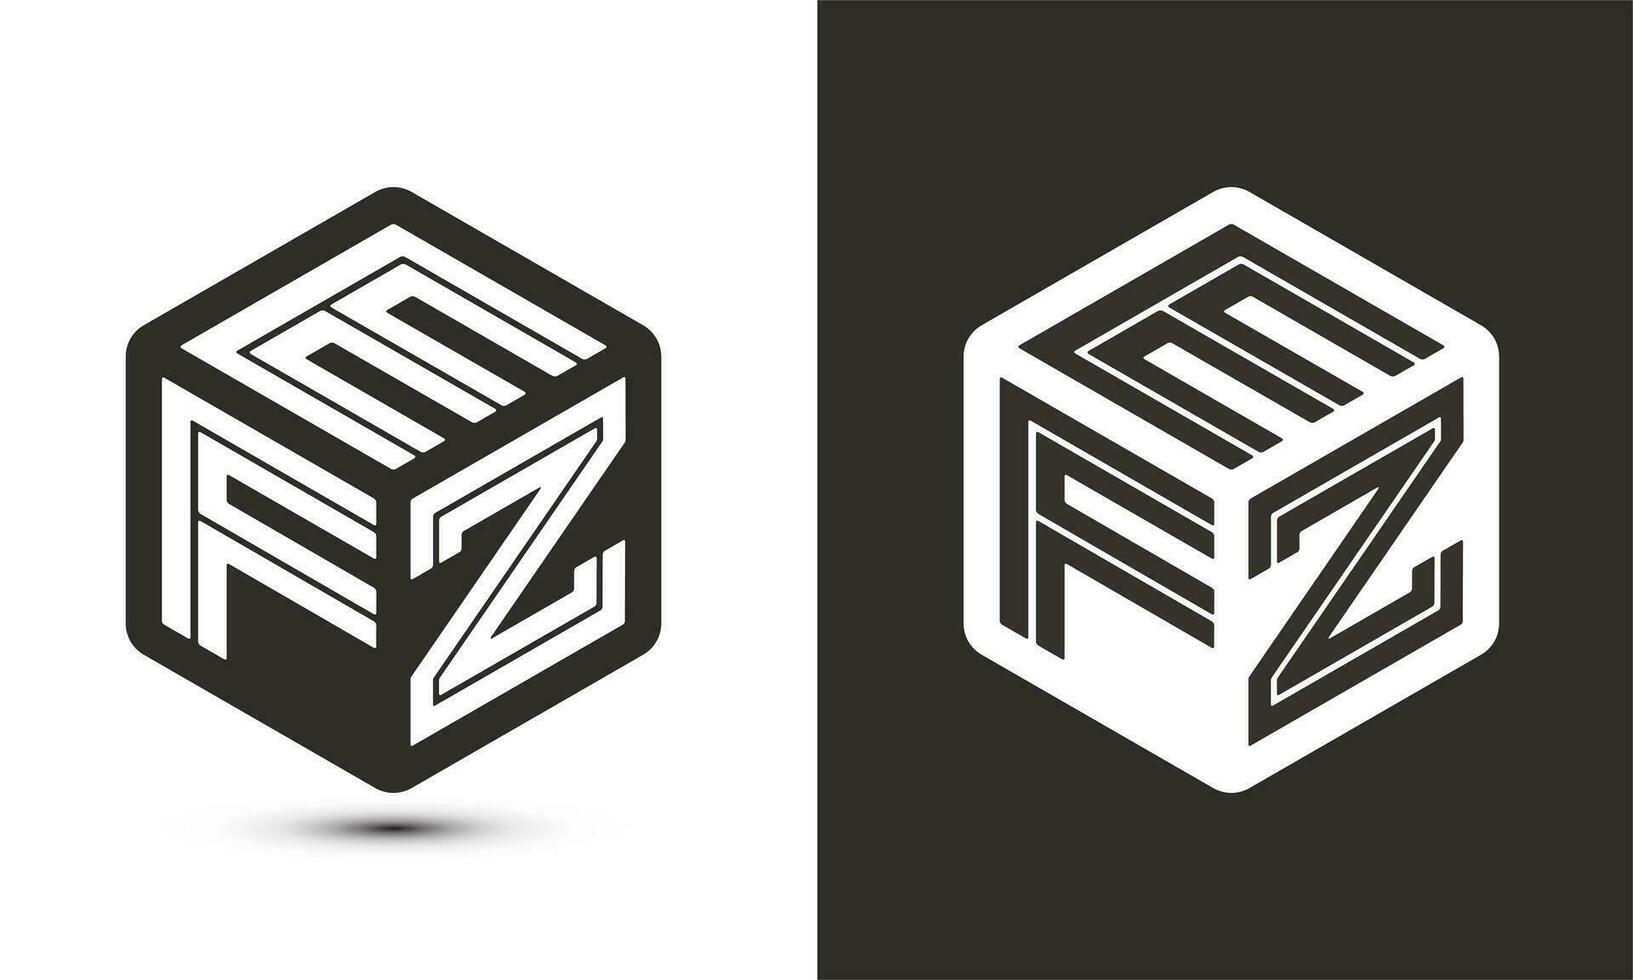 efz brief logo ontwerp met illustrator kubus logo, vector logo modern alfabet doopvont overlappen stijl.